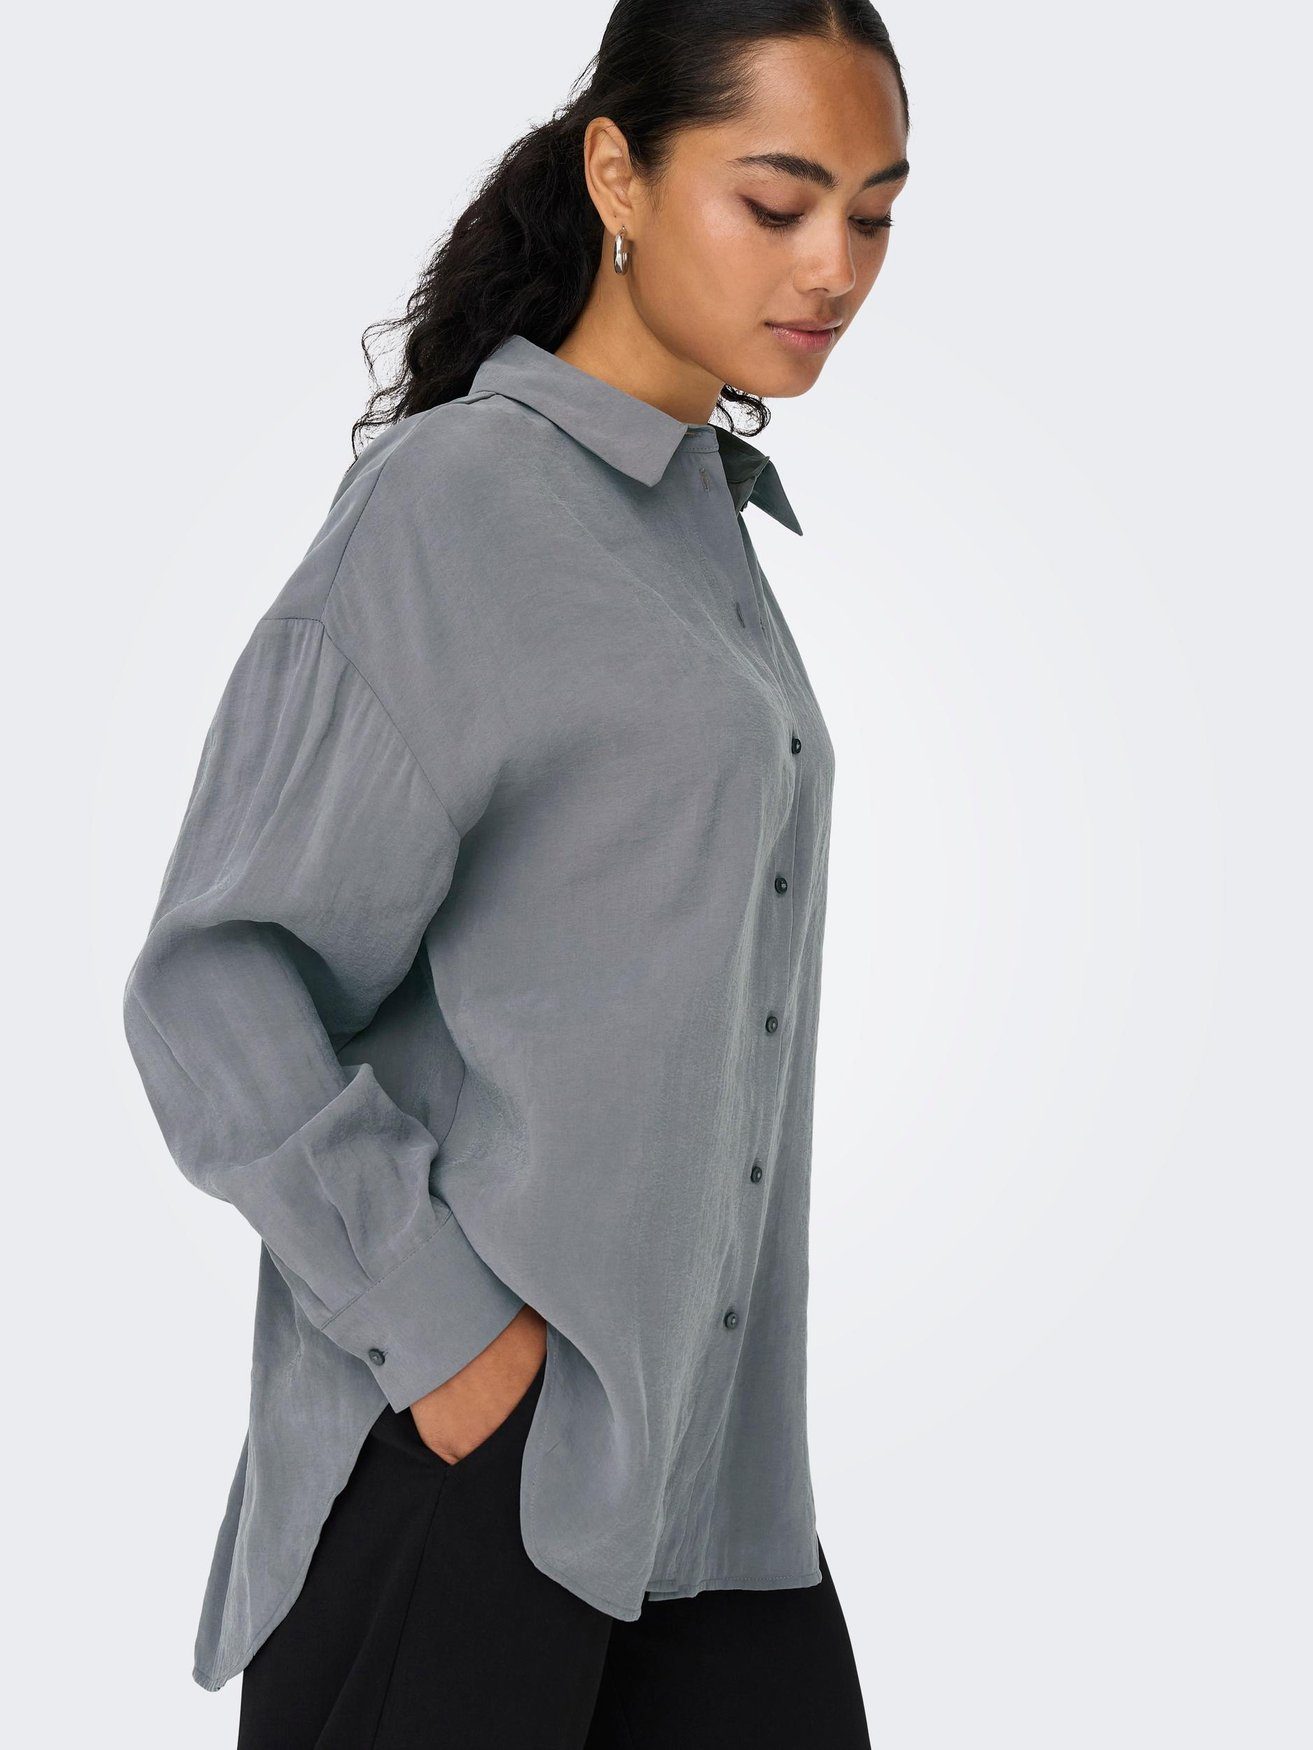 ONLY Blusenshirt Langarm ONLIRIS in Grau Weites Hemd Bluse Oversize 5635 Shirt